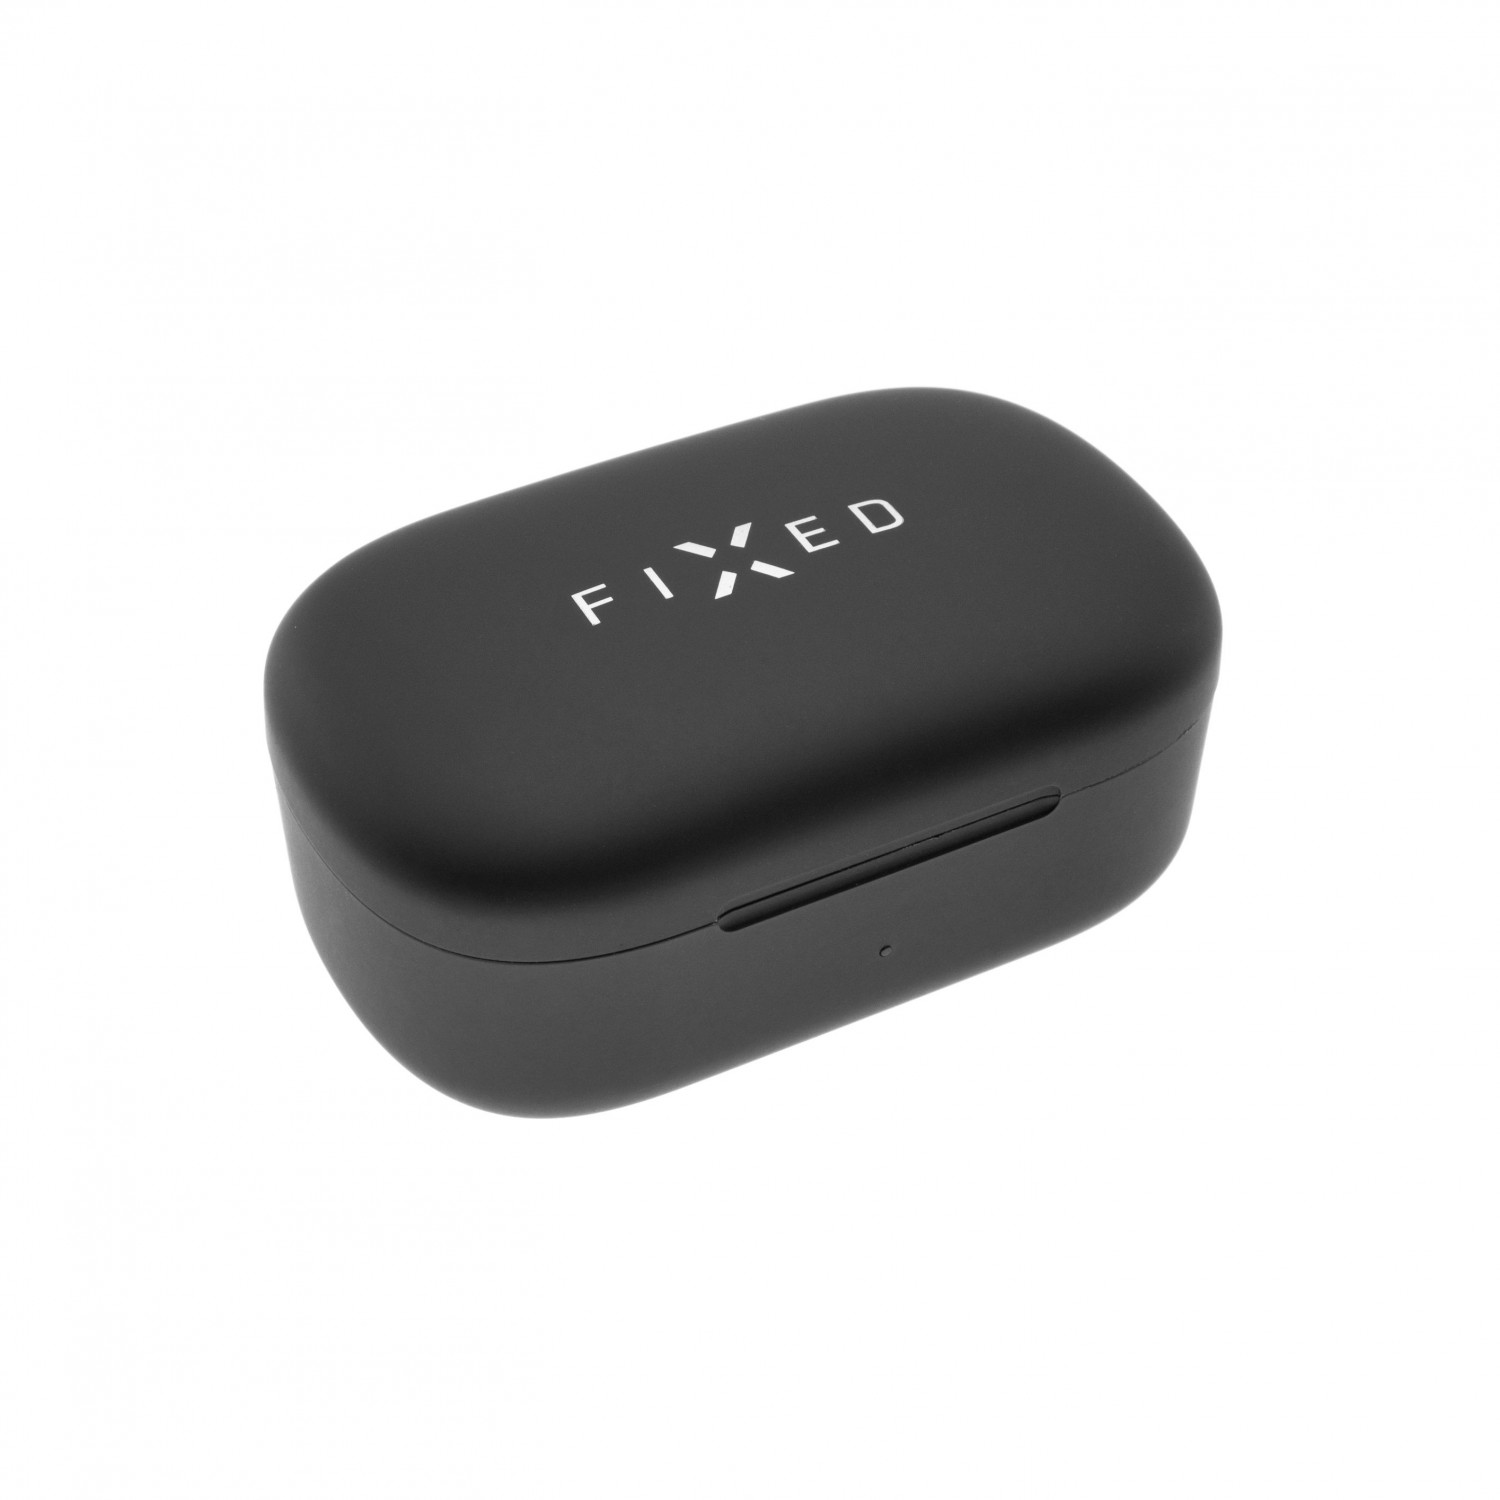 TWS sluchátka FIXED Boom HD s bezdrátovým nabíjením, černá